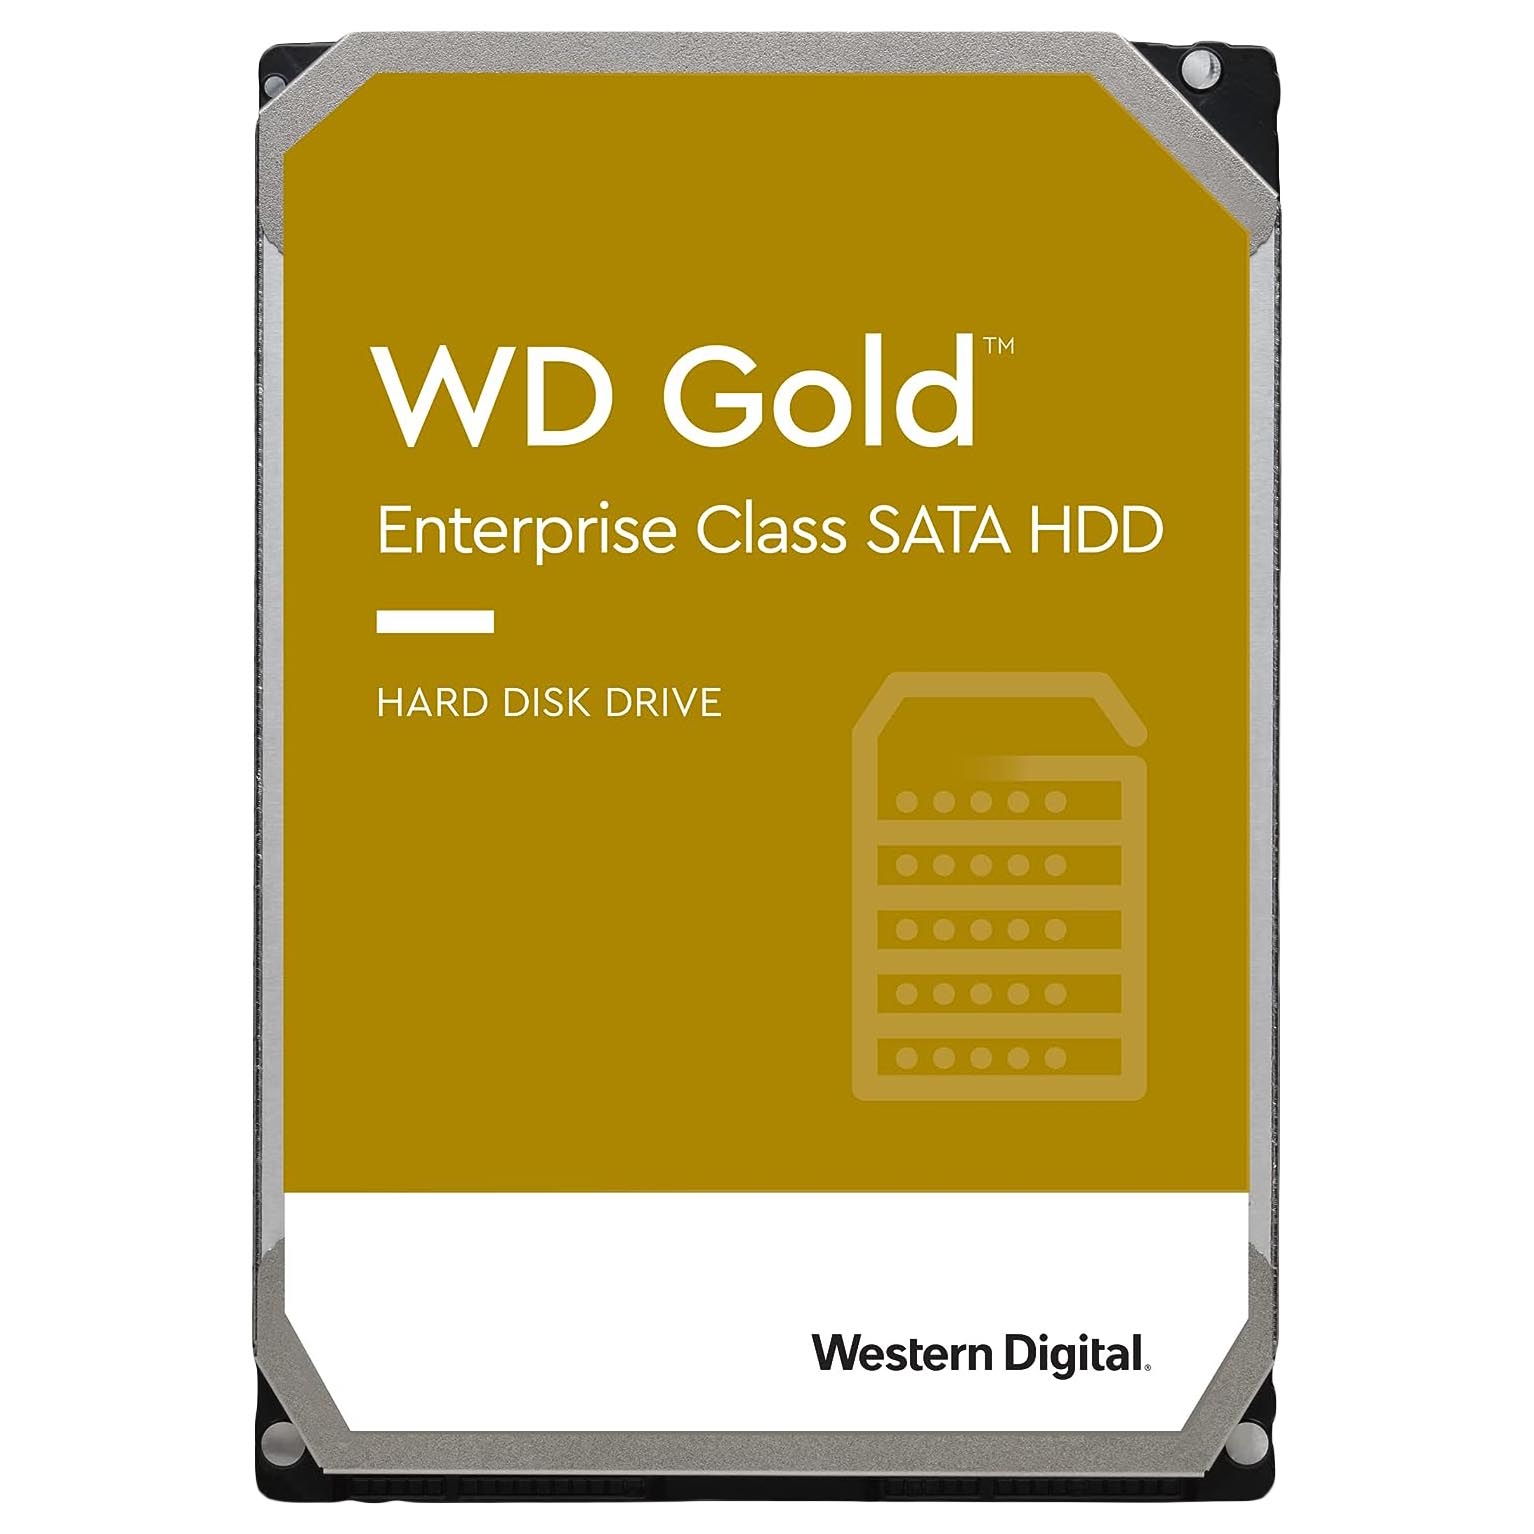 Внутренний жесткий диск Western Digital WD Gold Enterprise Class, WD161VRYZ, 16Тб внутренний жесткий диск western digital gold 3 5 8 тб wd8004fryz